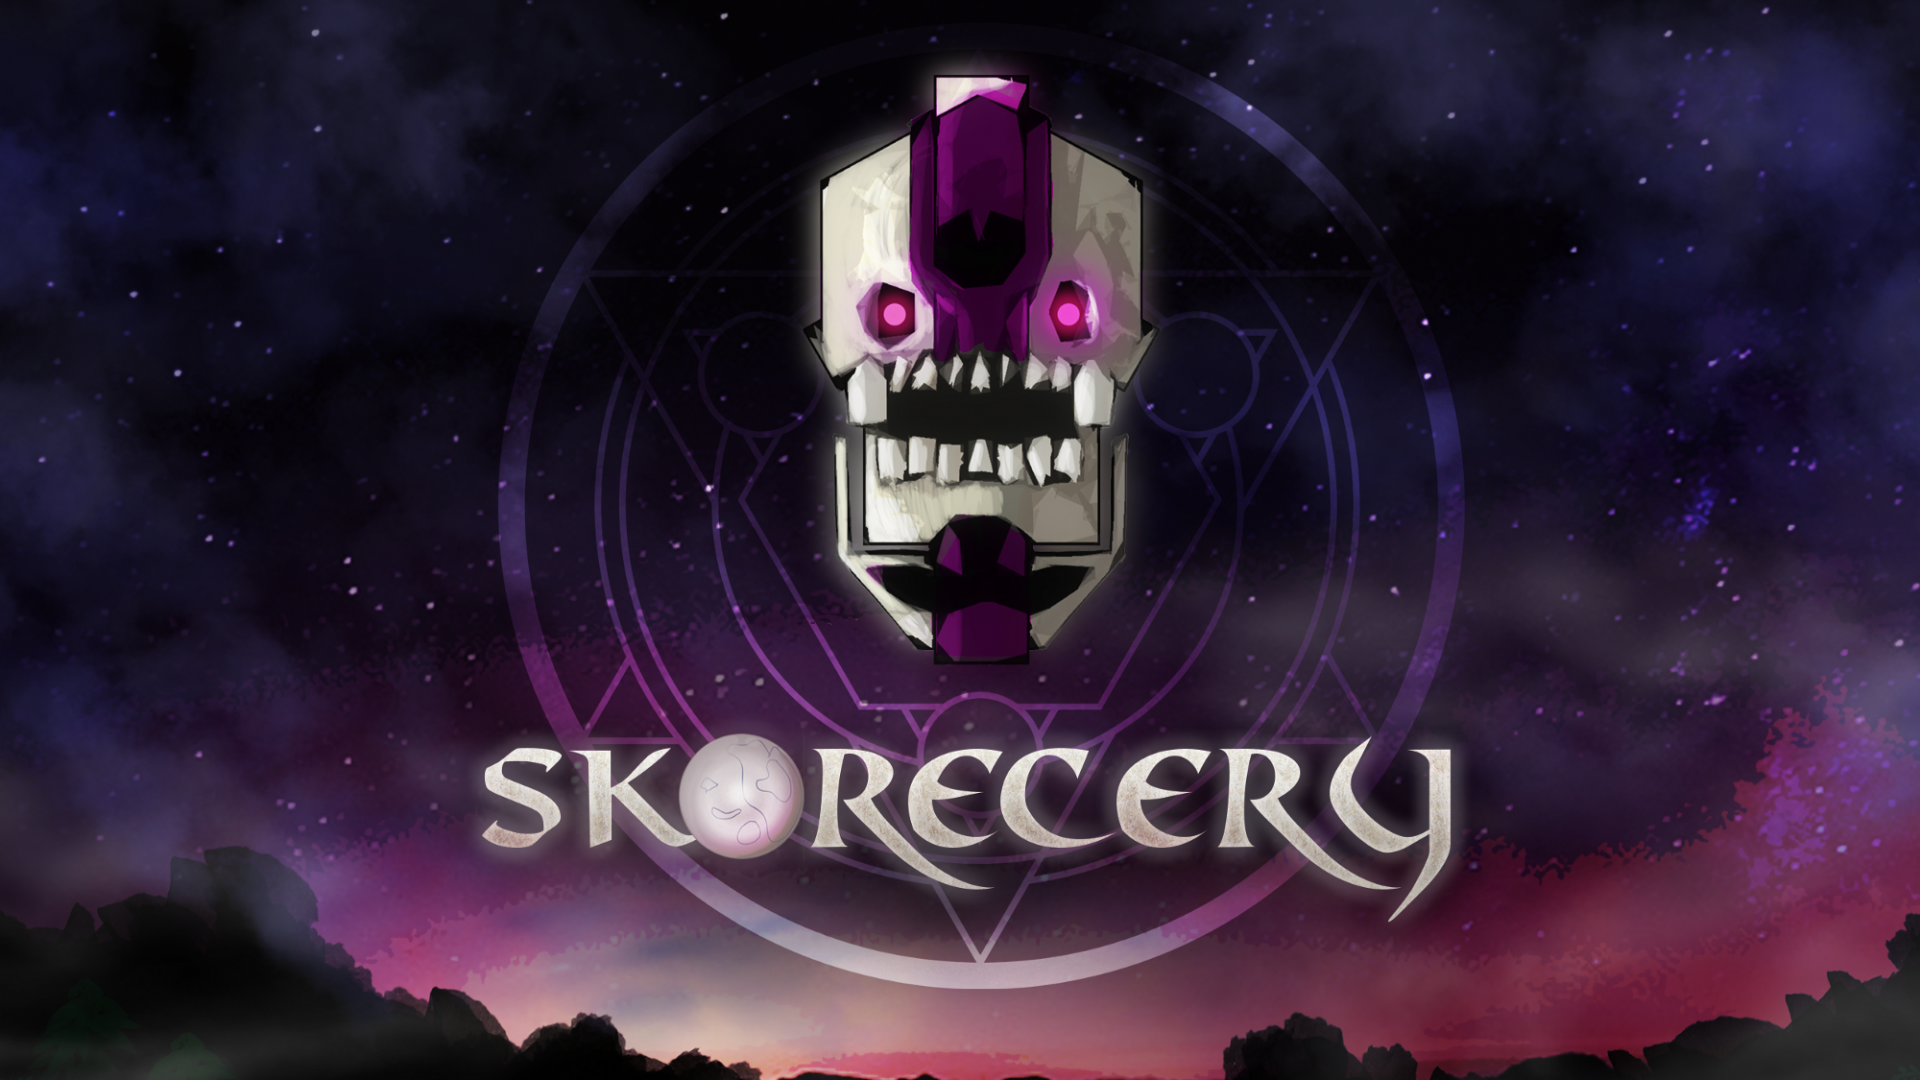 Skorecery: disponible a partir del 5 de febrero en PS4